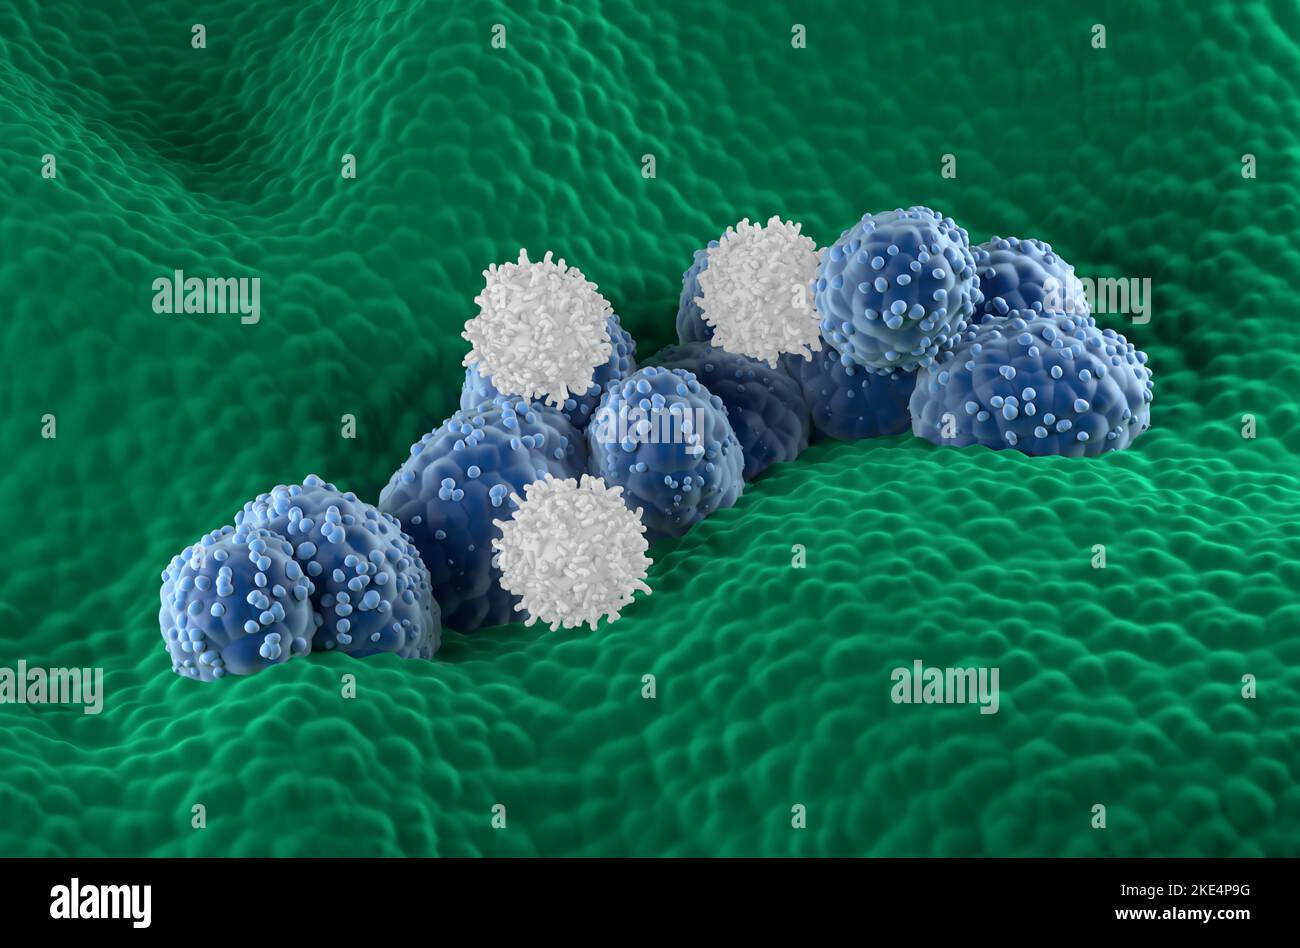 Le cellule T attaccano le cellule del cancro della prostata nell'epitelio ghiandolare prostatico - vista isometrica 3D illustrazione Foto Stock